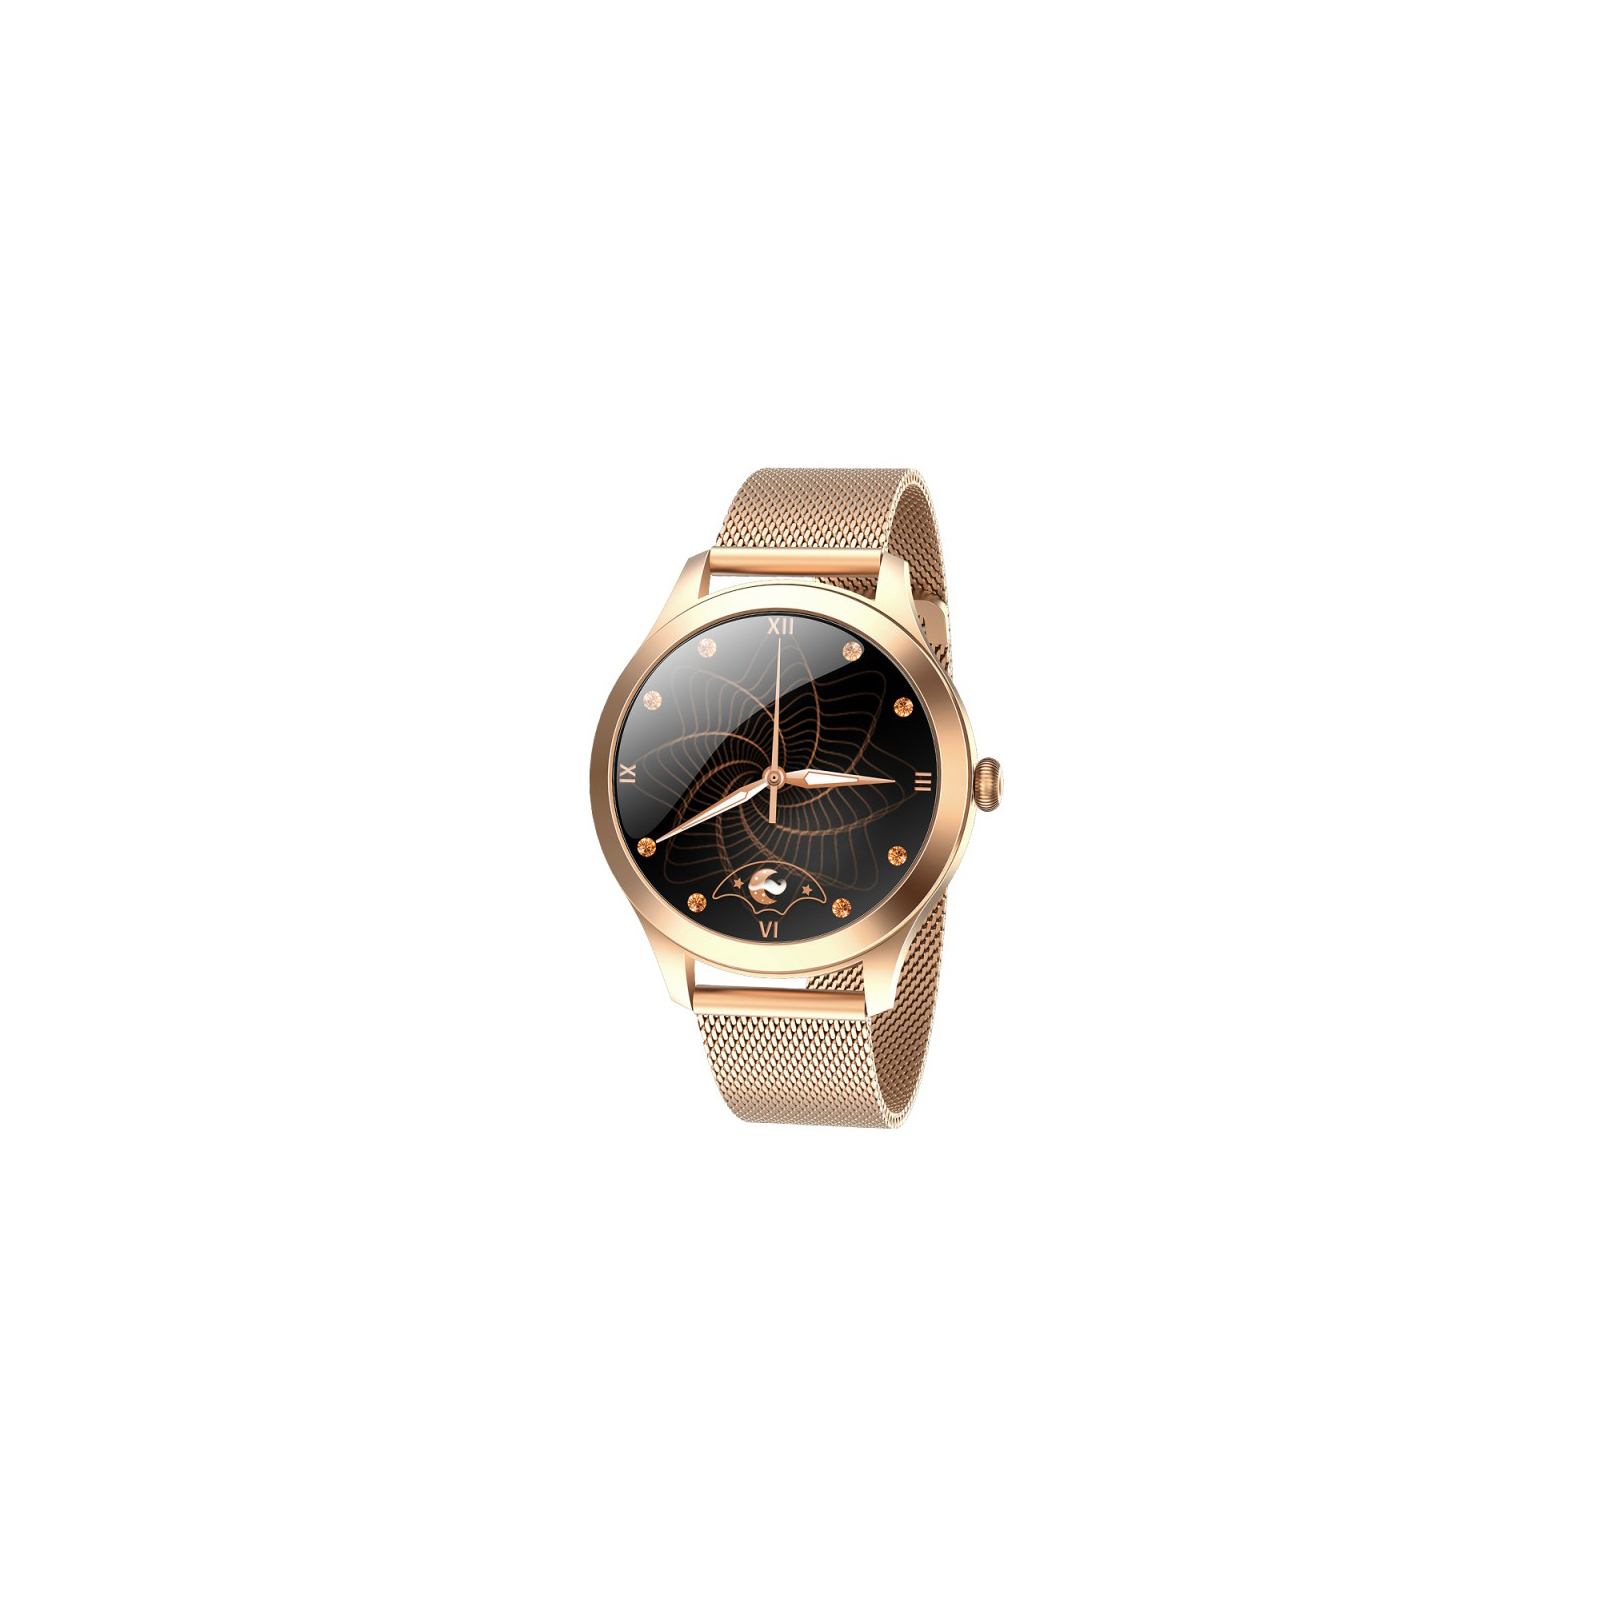 Смарт-часы Maxcom Fit FW42 Gold